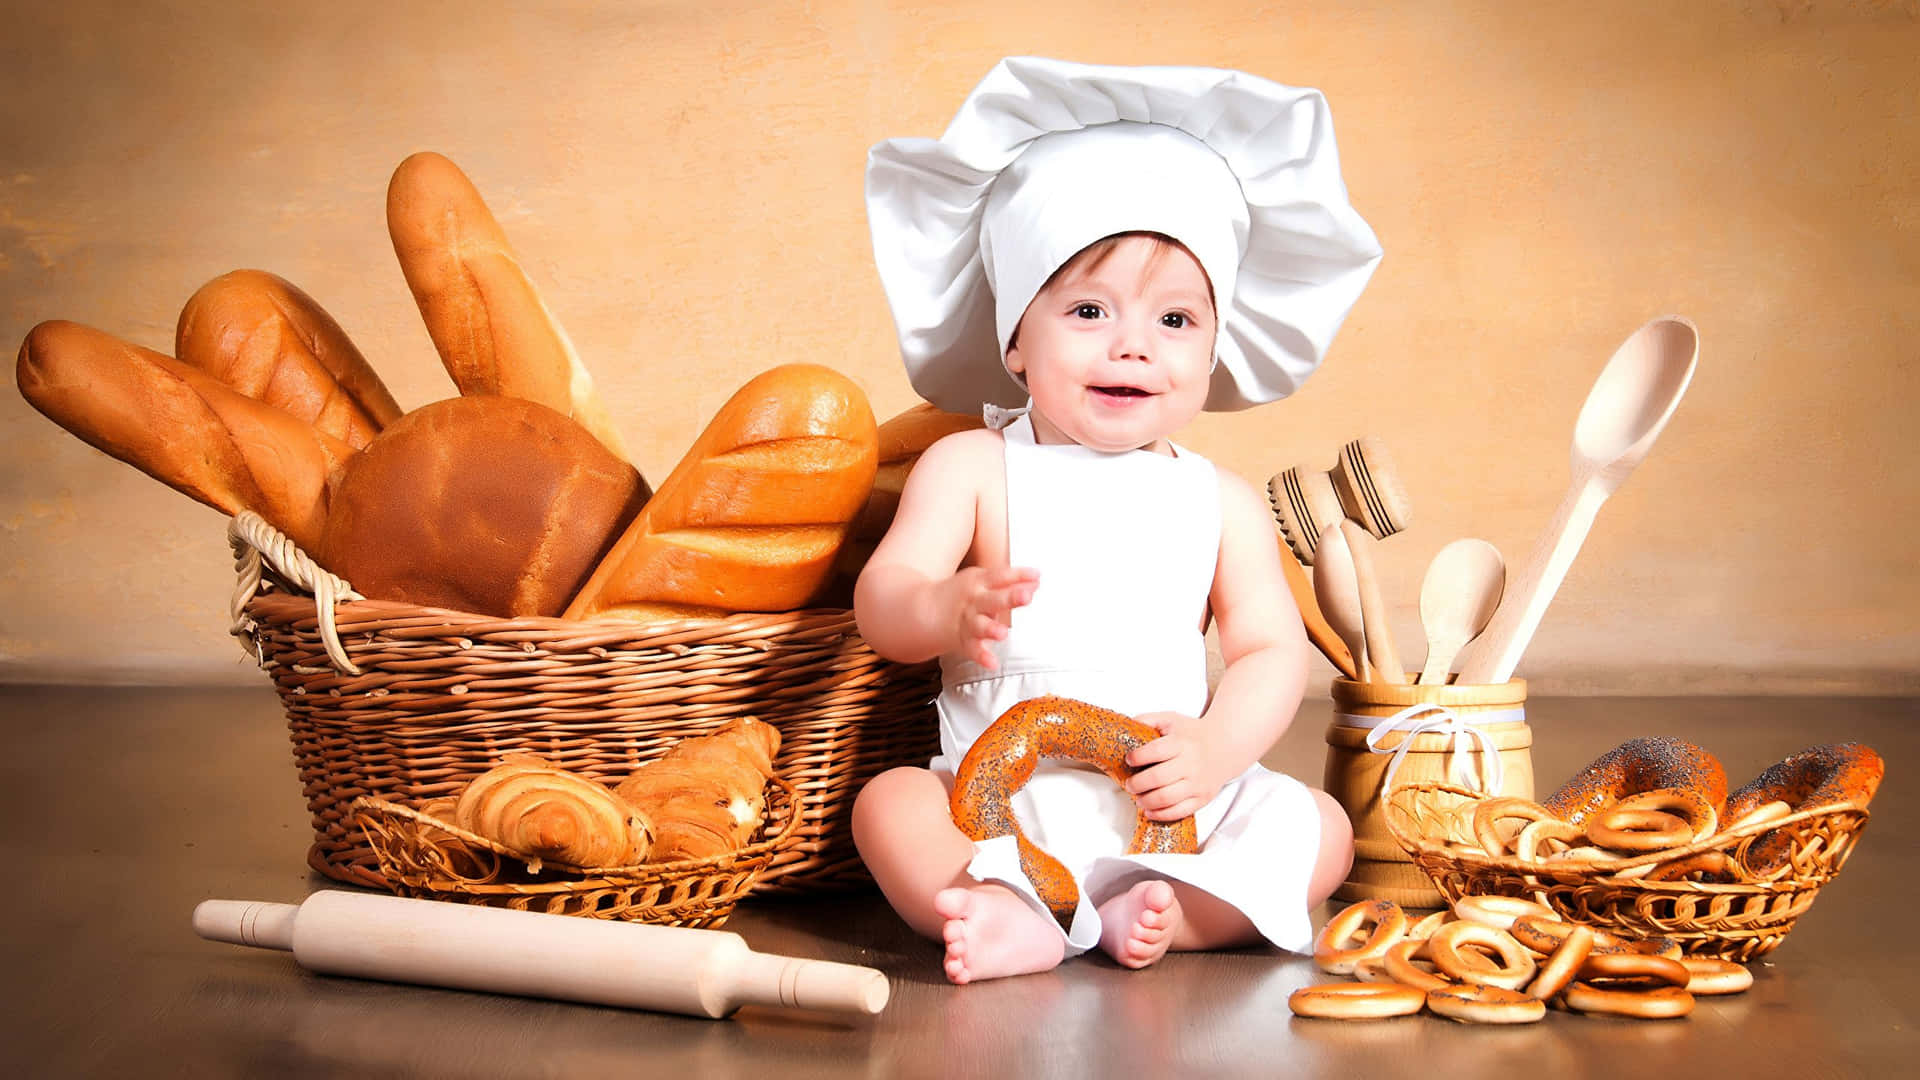 Imagende Un Bebé Usando Un Gorro De Chef